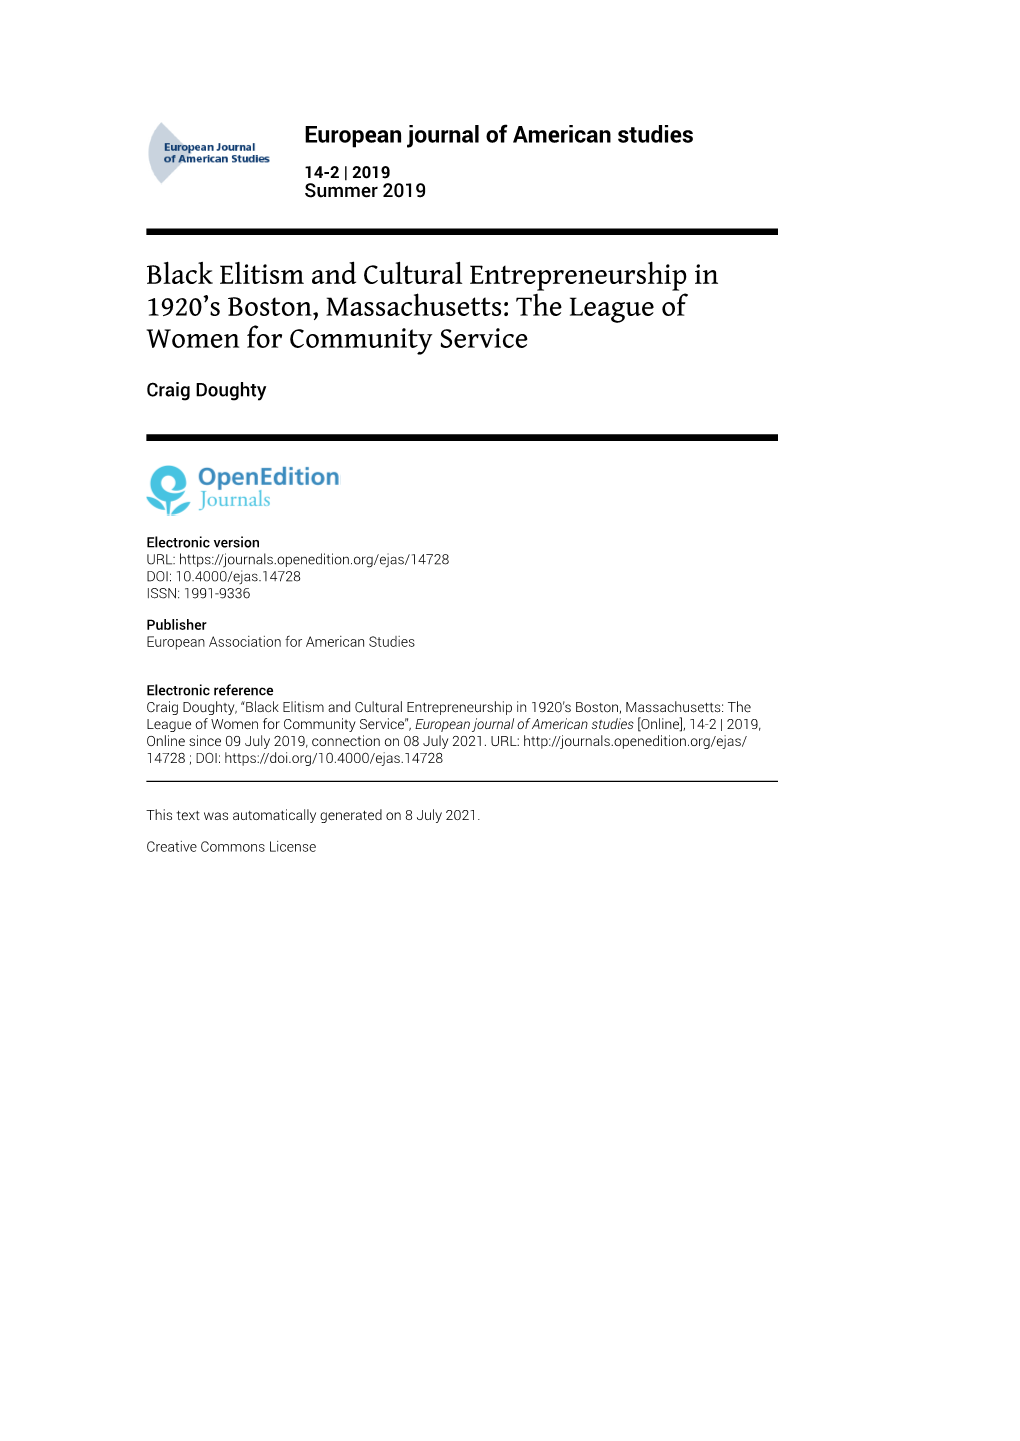 European Journal of American Studies, 14-2 | 2019 Black Elitism and Cultural Entrepreneurship in 1920’S Boston, Massachusetts: